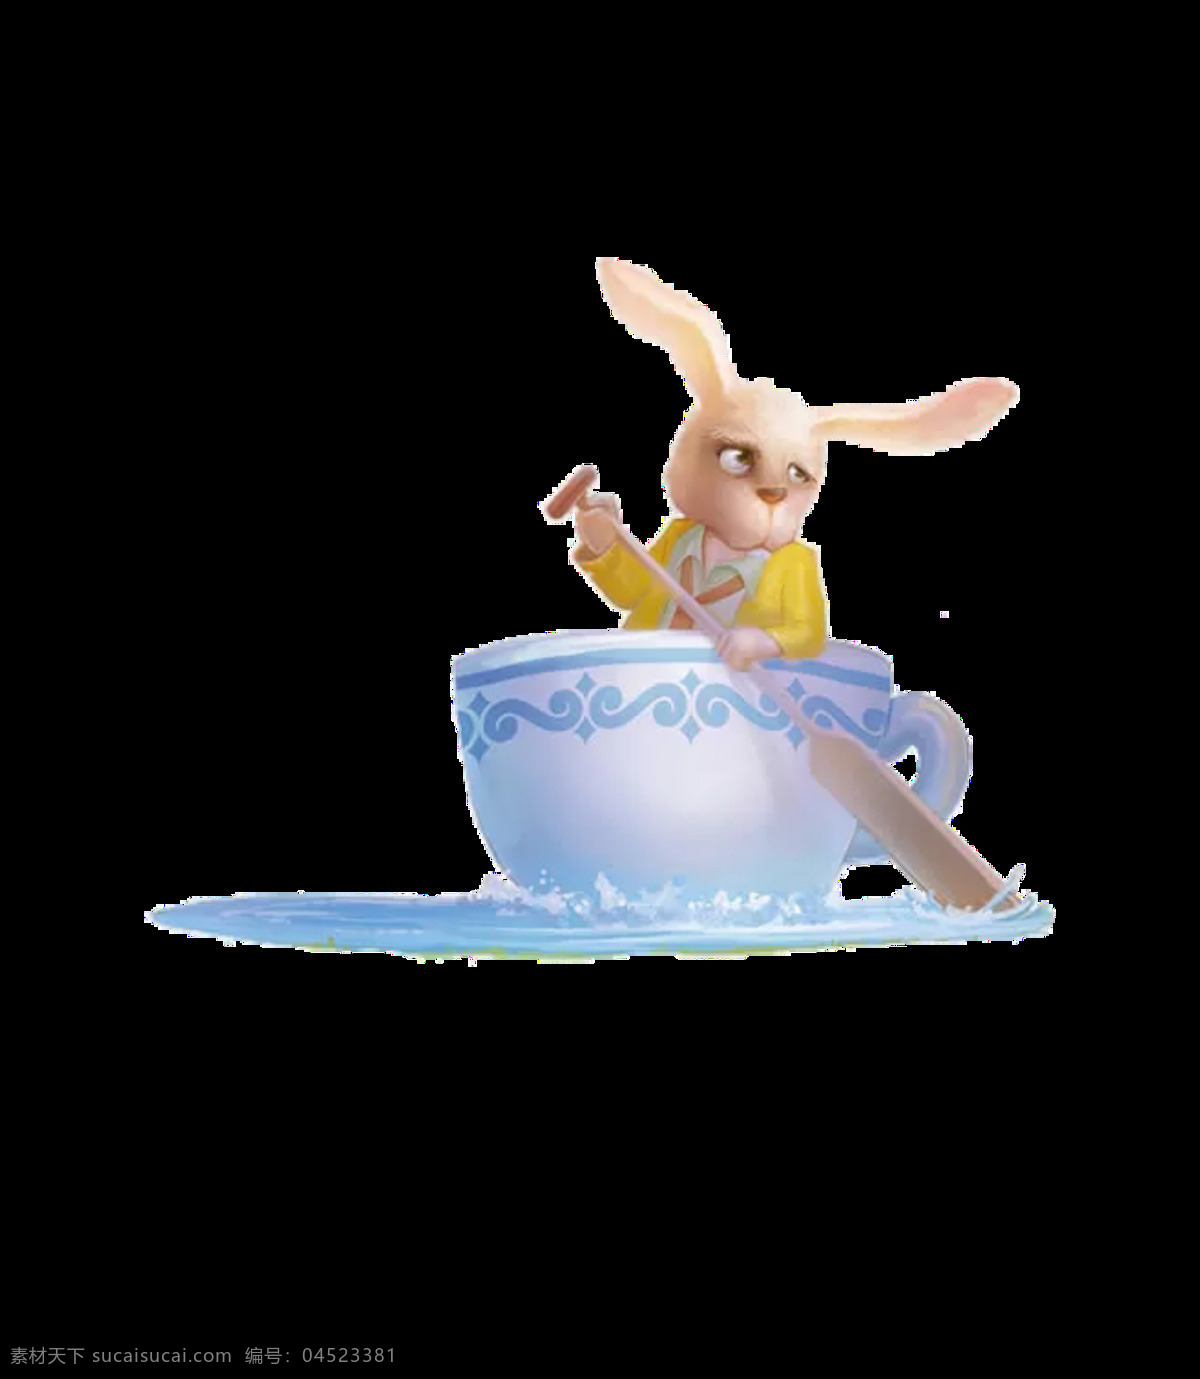 蓝色 缸 里 的卡 通 兔 图案 元素 彩色装饰 卡通兔 设计元素 水缸 兔子 唯美装饰